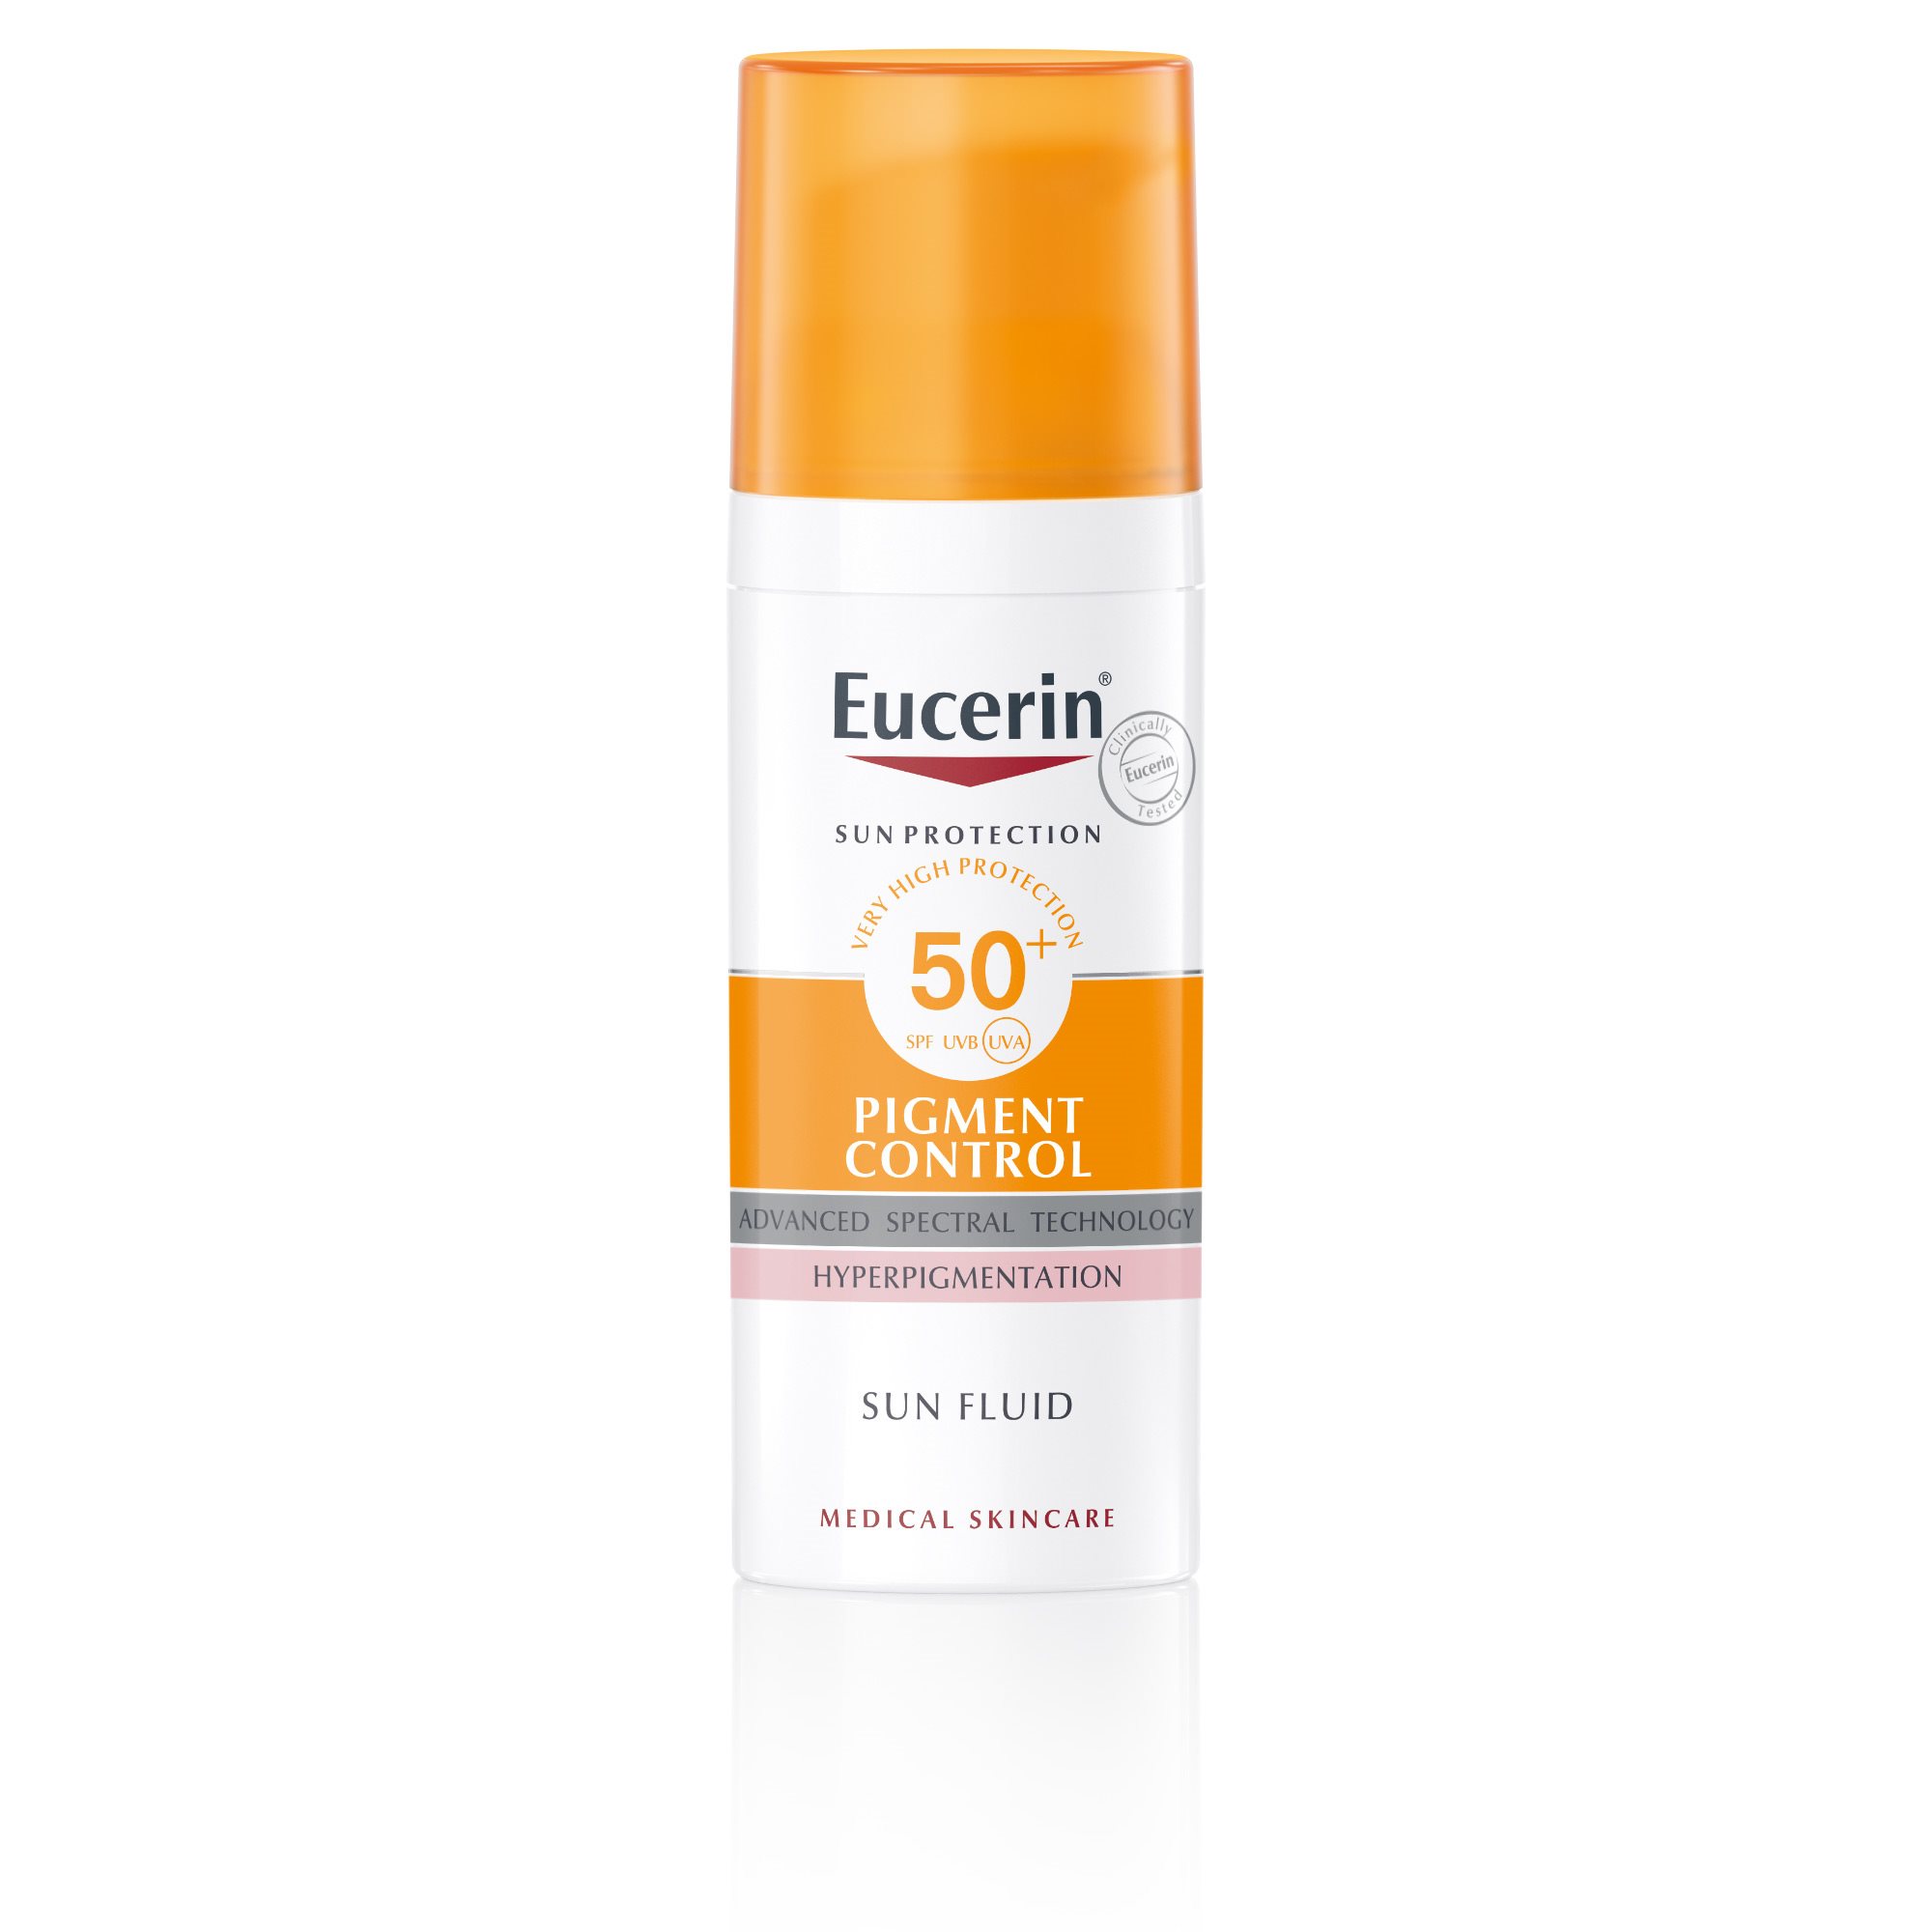 Крем с защитой 50 spf для лица. Солнцезащитный крем Эуцерин 50+. Eucerin солнцезащитный крем для проблемной кожи. Эуцерин солнцезащитный крем SPF 50. Eucerin флюид Sun Pigment Control SPF 50.